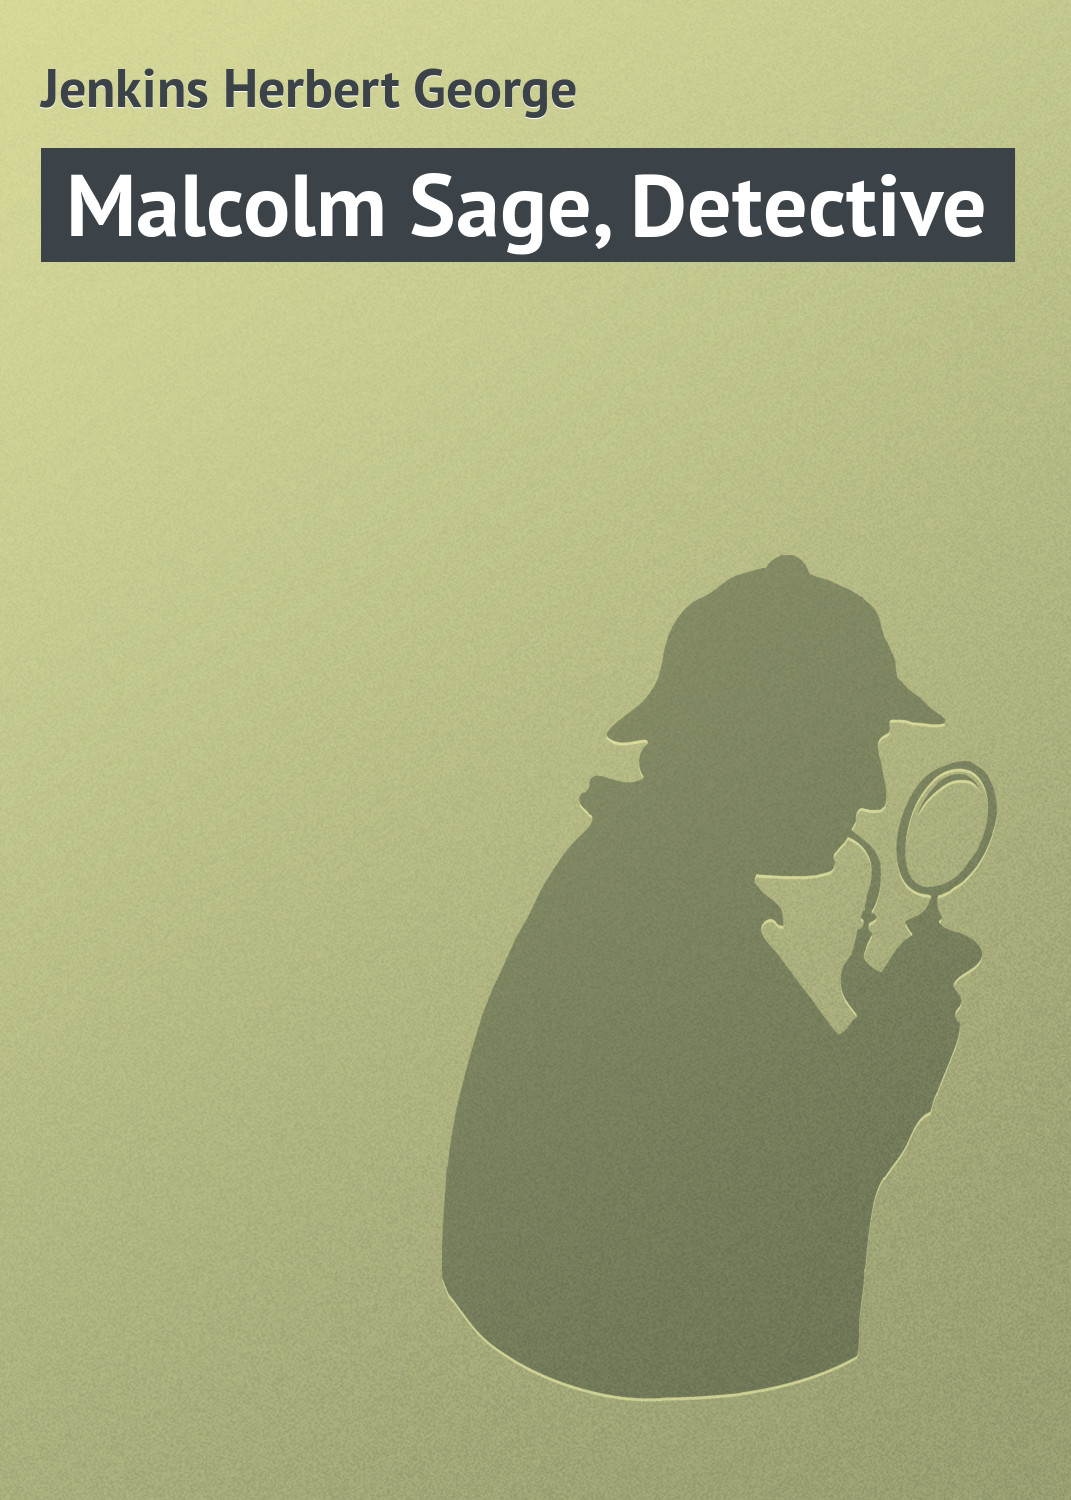 Книга Malcolm Sage, Detective из серии , созданная Herbert Jenkins, может относится к жанру Зарубежная классика, Классические детективы, Зарубежные детективы, Иностранные языки. Стоимость электронной книги Malcolm Sage, Detective с идентификатором 23166915 составляет 5.99 руб.